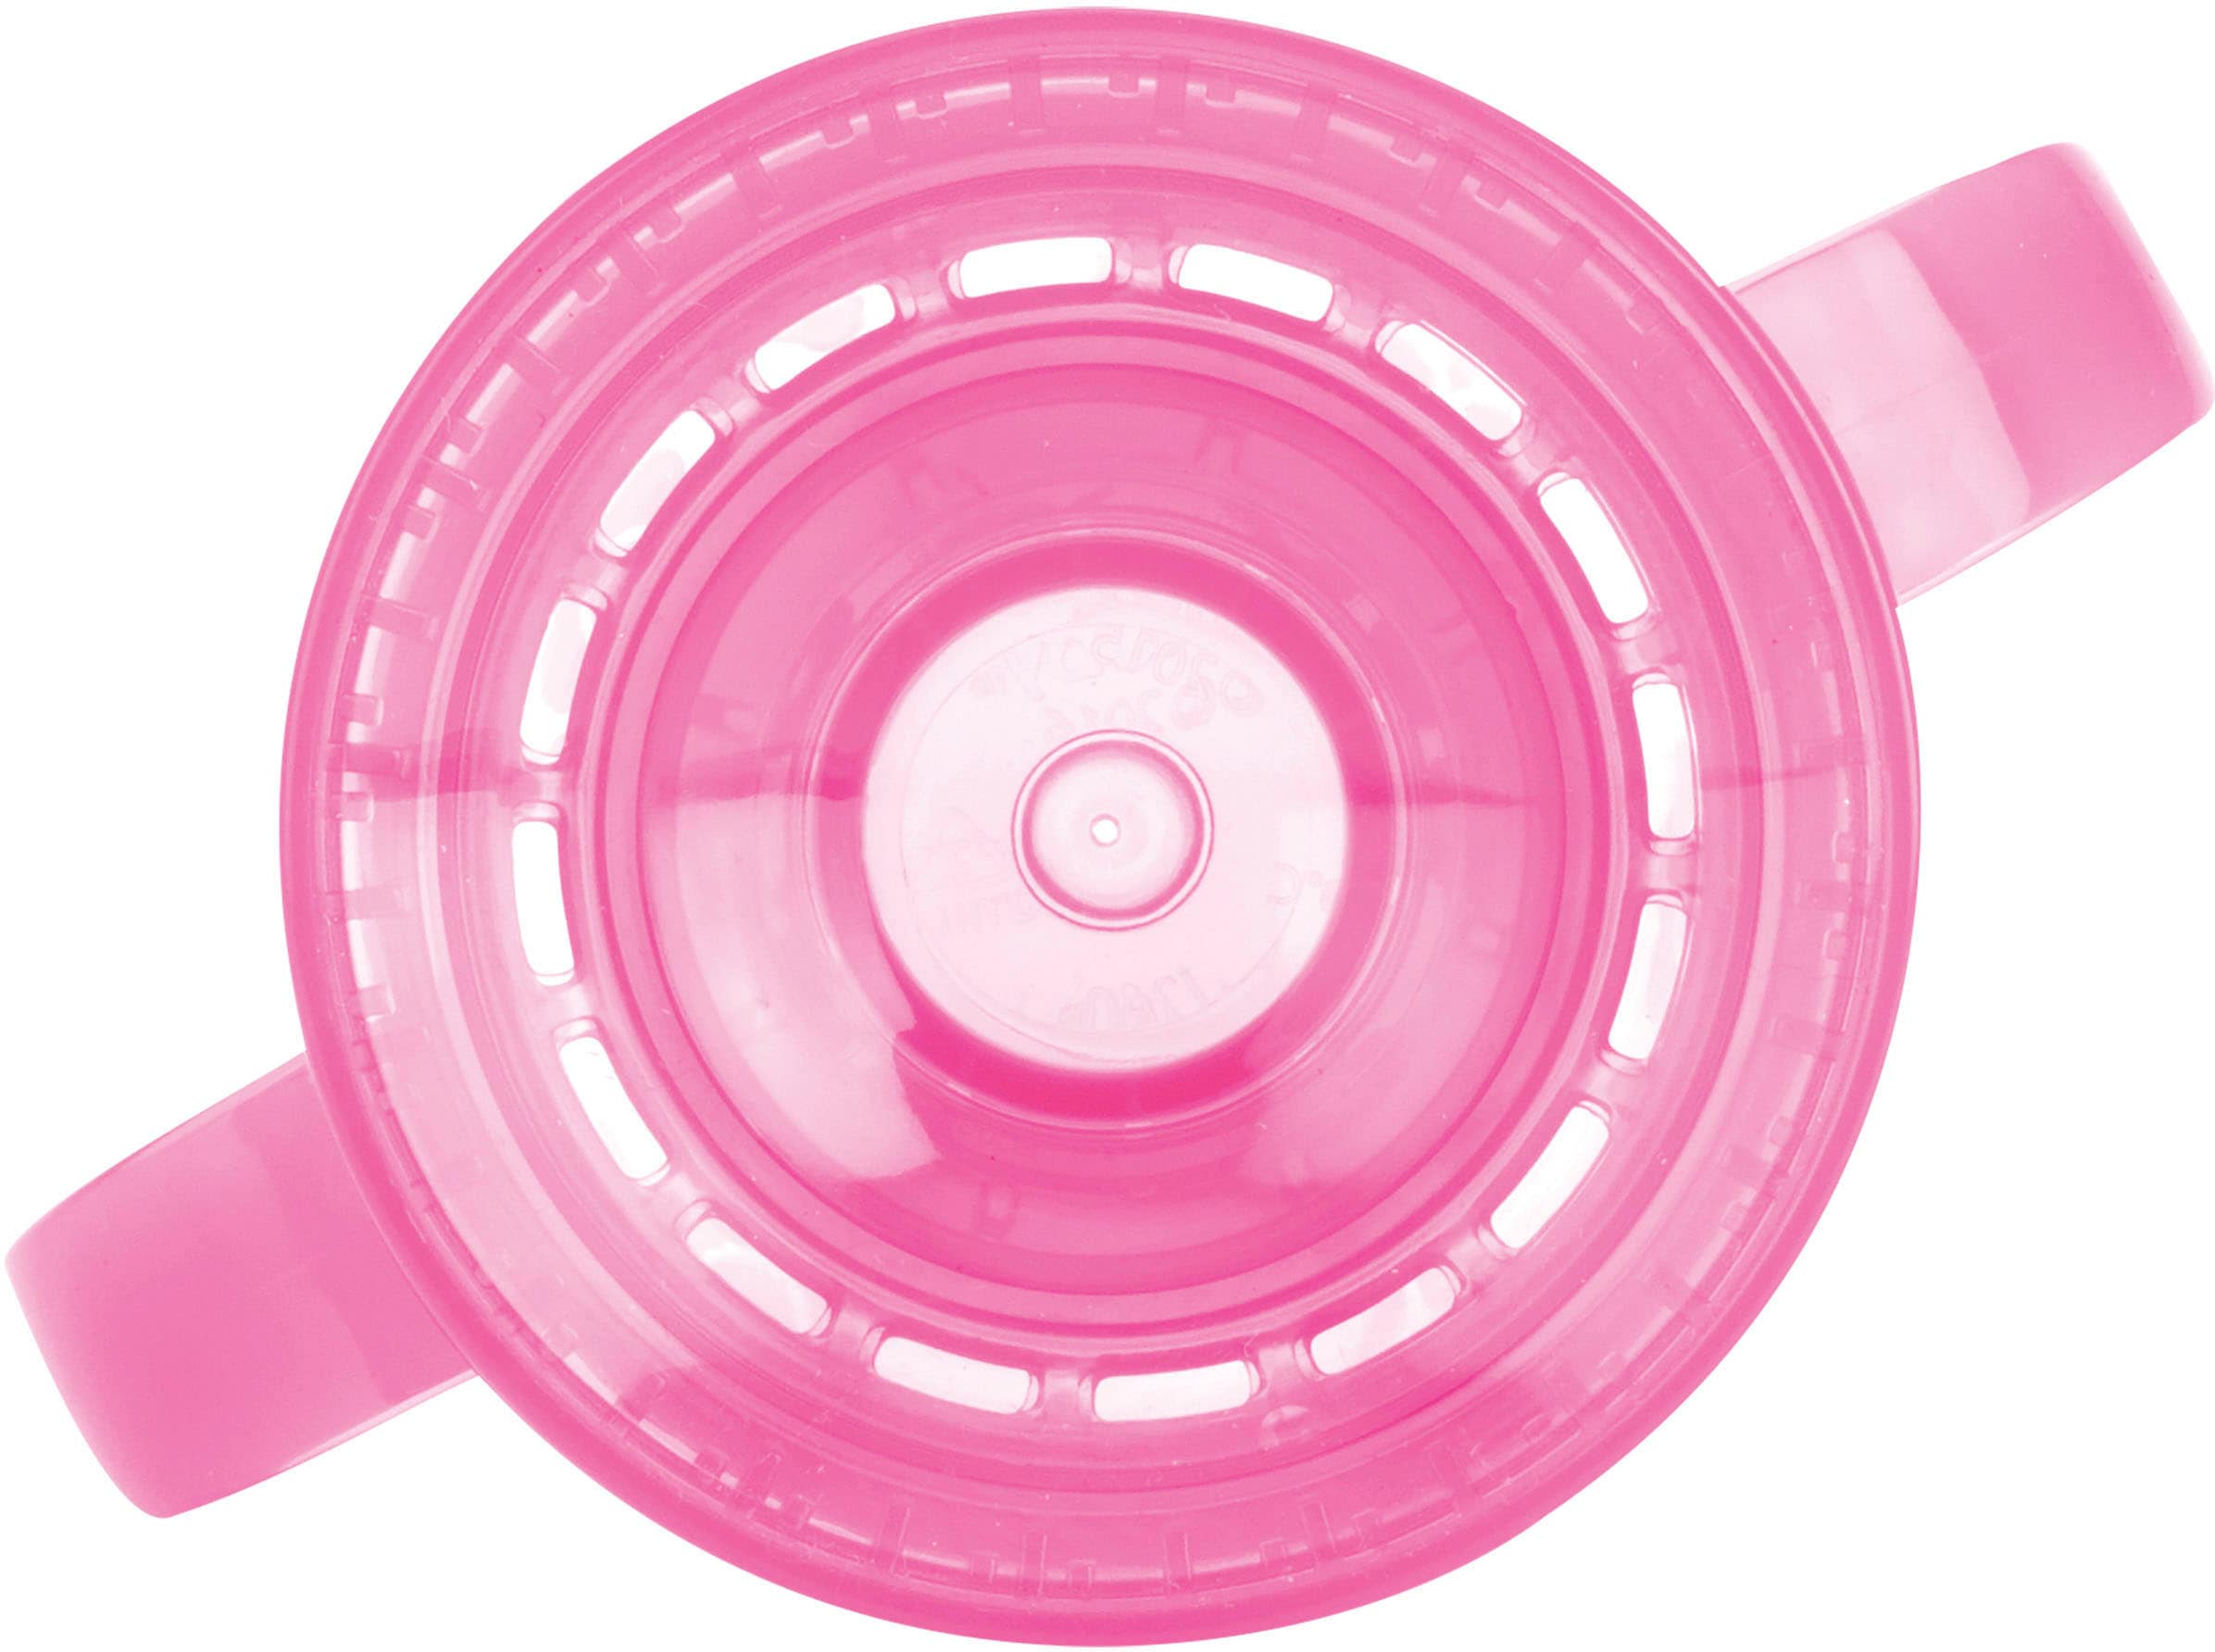 Nuby Kinderbecher »360° Trinklerntasse 240ml, pink«, mit Handgriffen